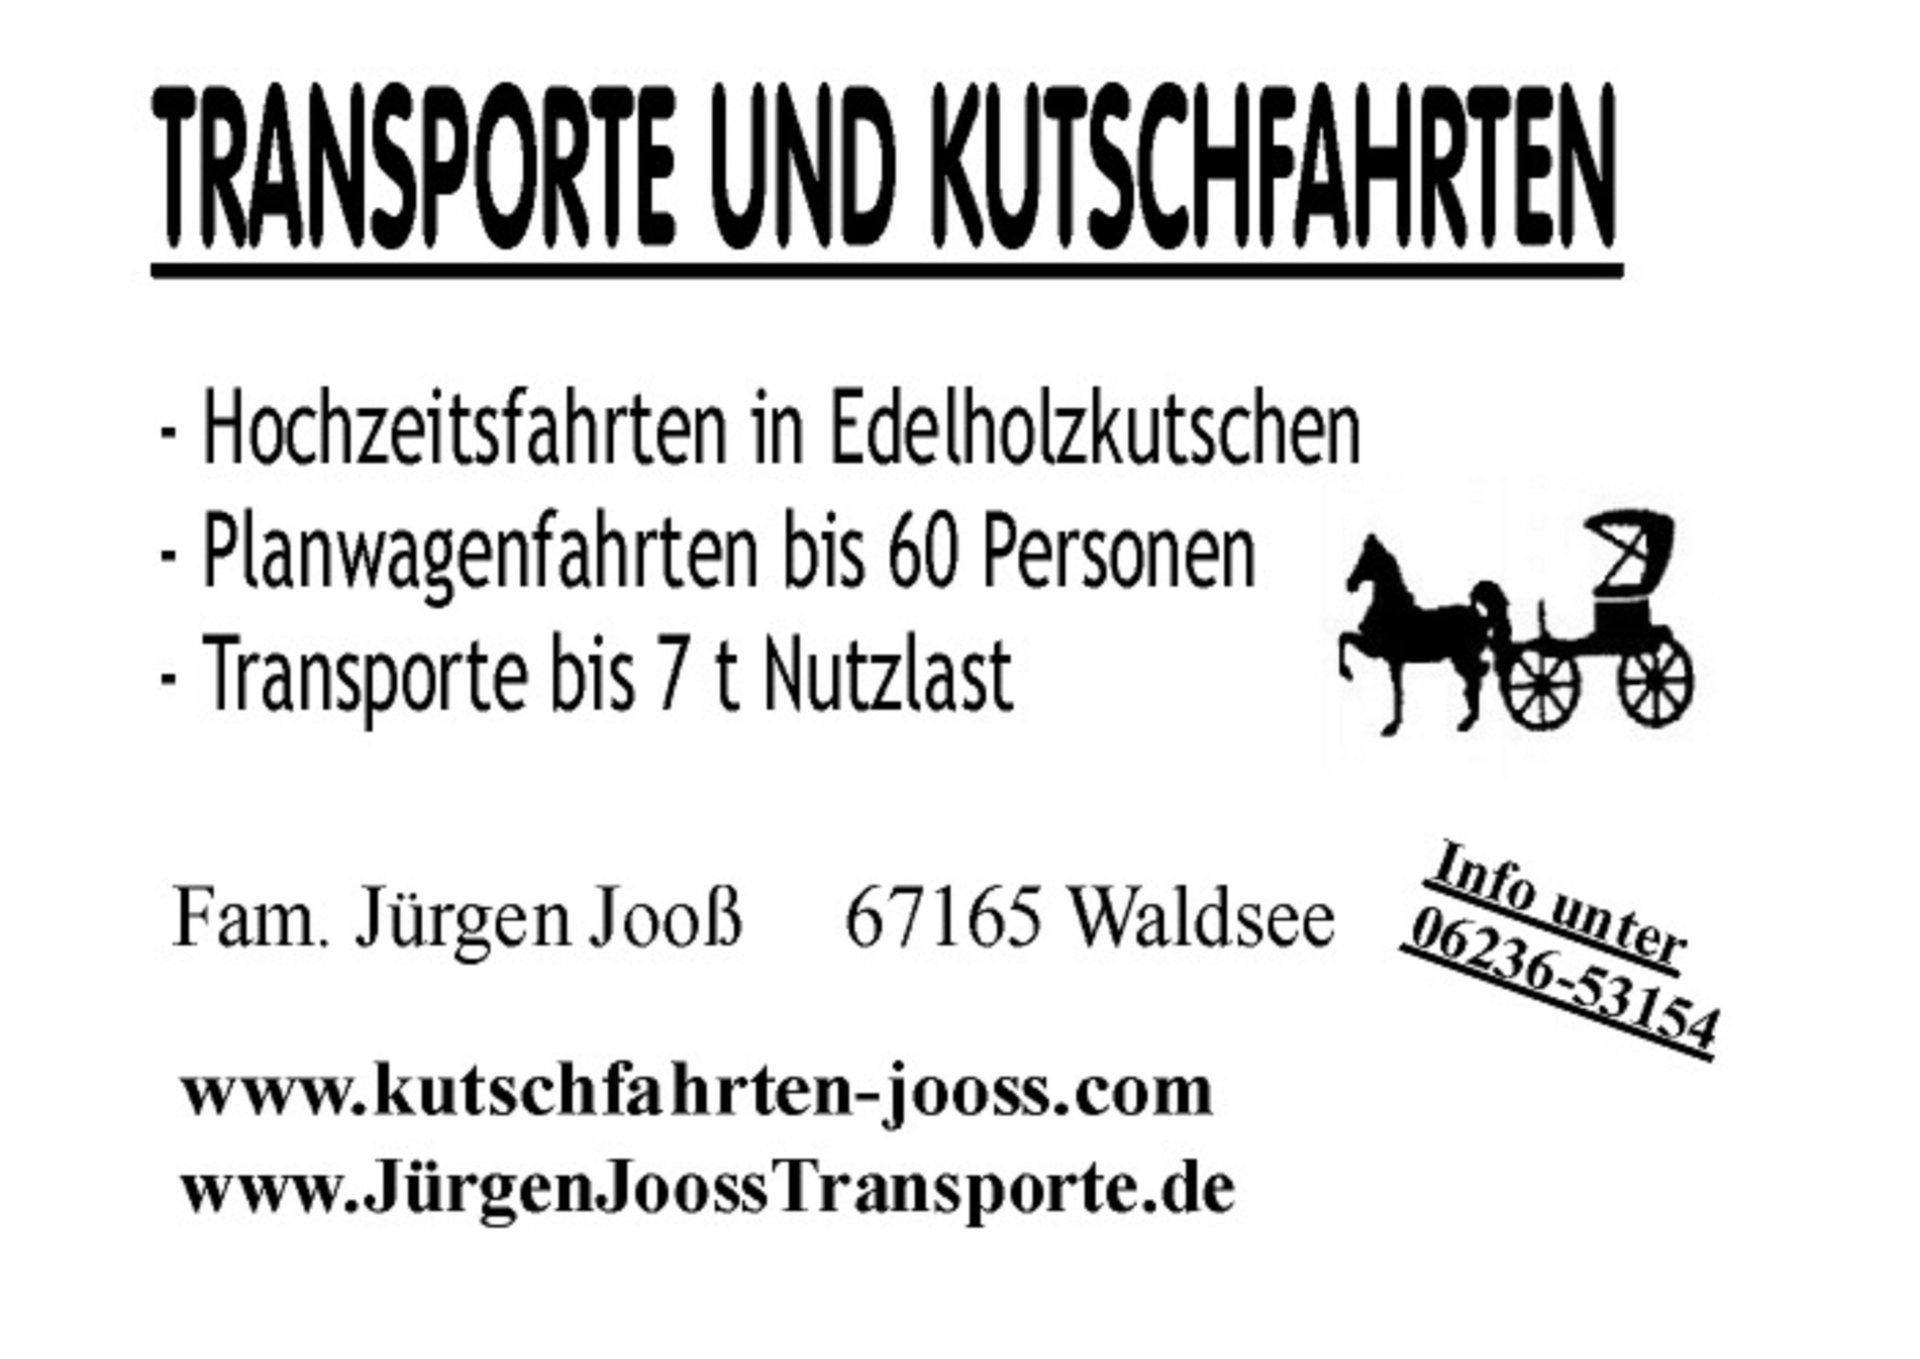 (c) Kutschfahrten-jooss.de